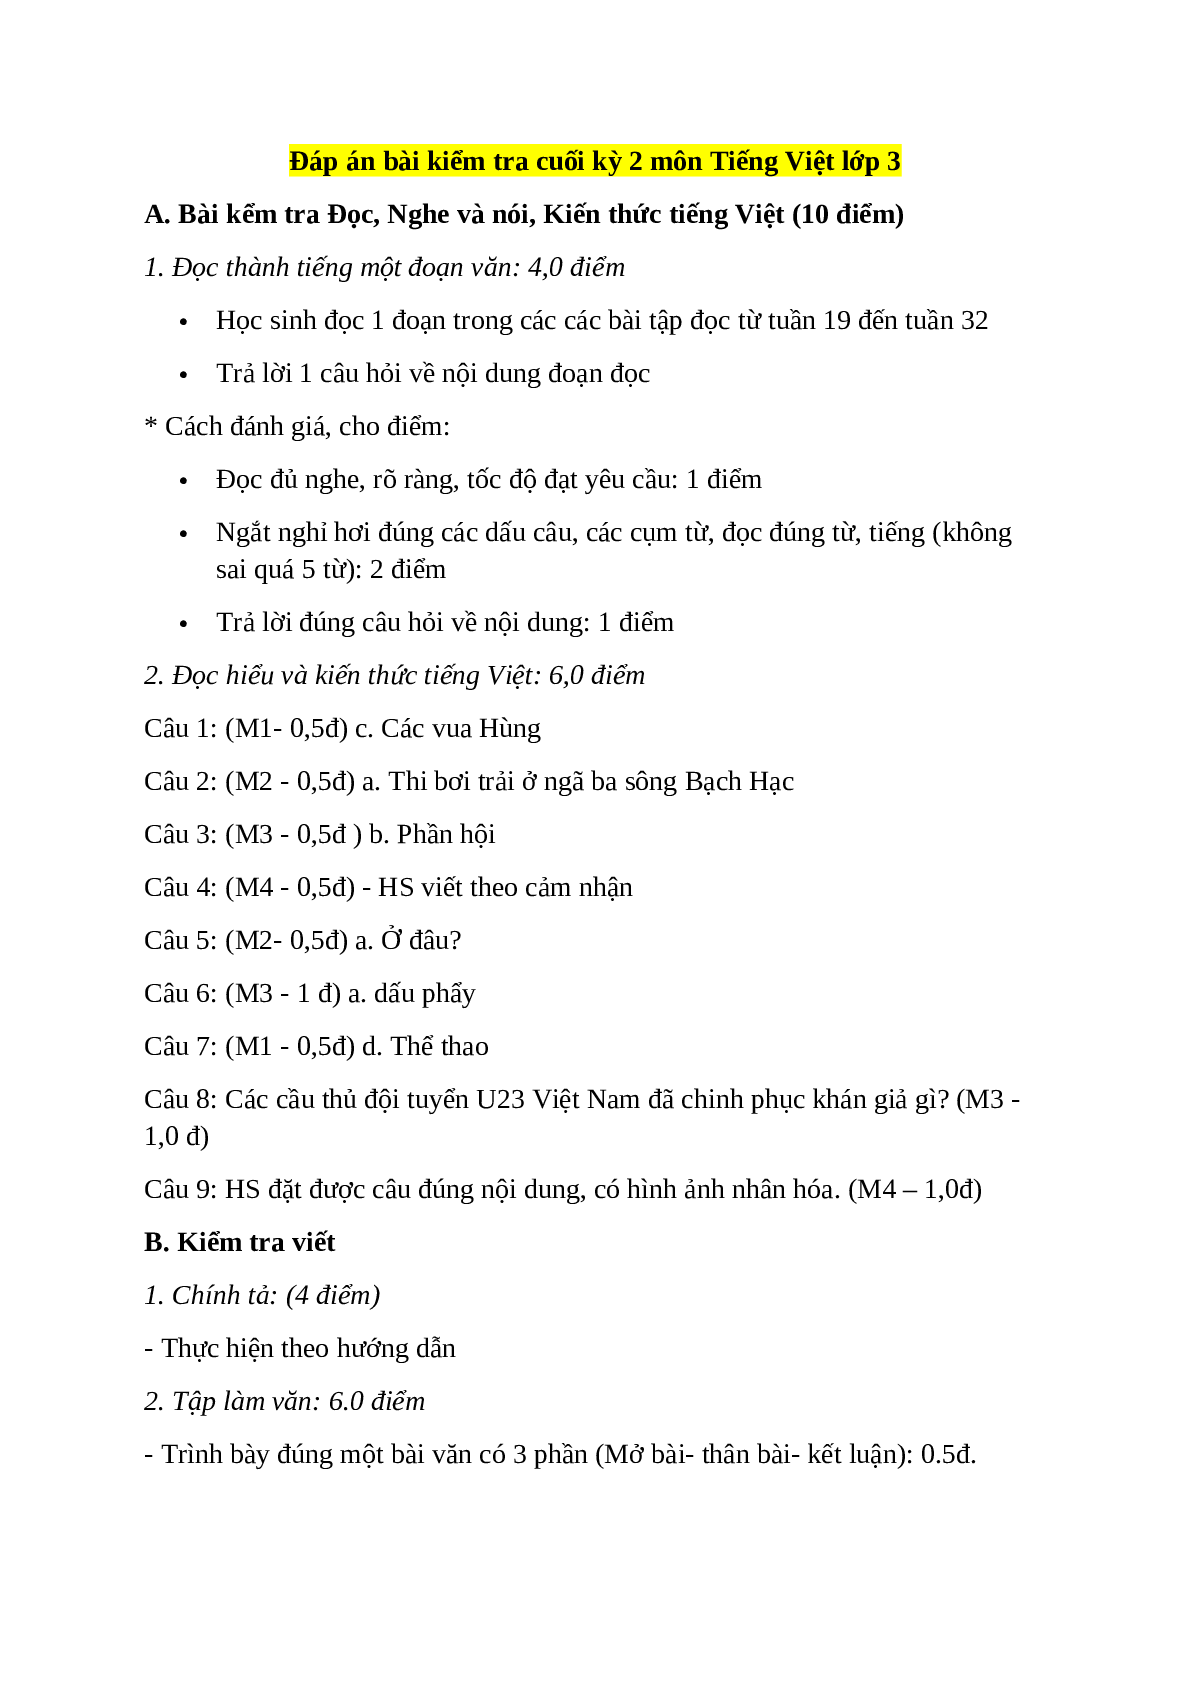 Đề kiểm tra cuối kì 2 môn Tiếng Việt lớp 3 có đáp án - đề số 1 (trang 4)